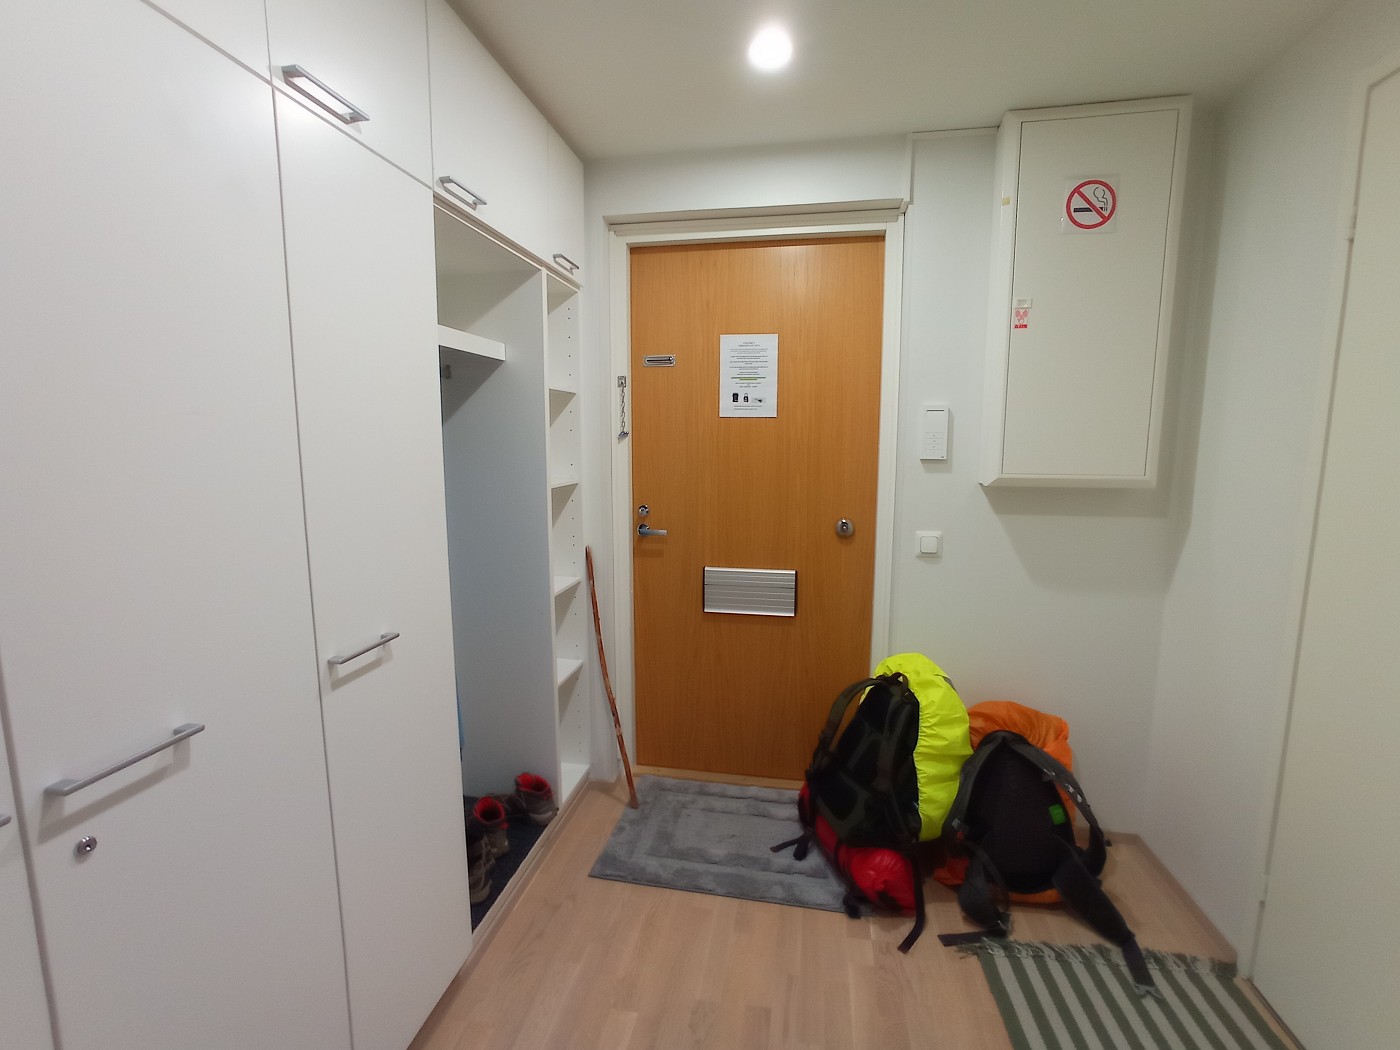 Vaasa Airbnb apartment entryway